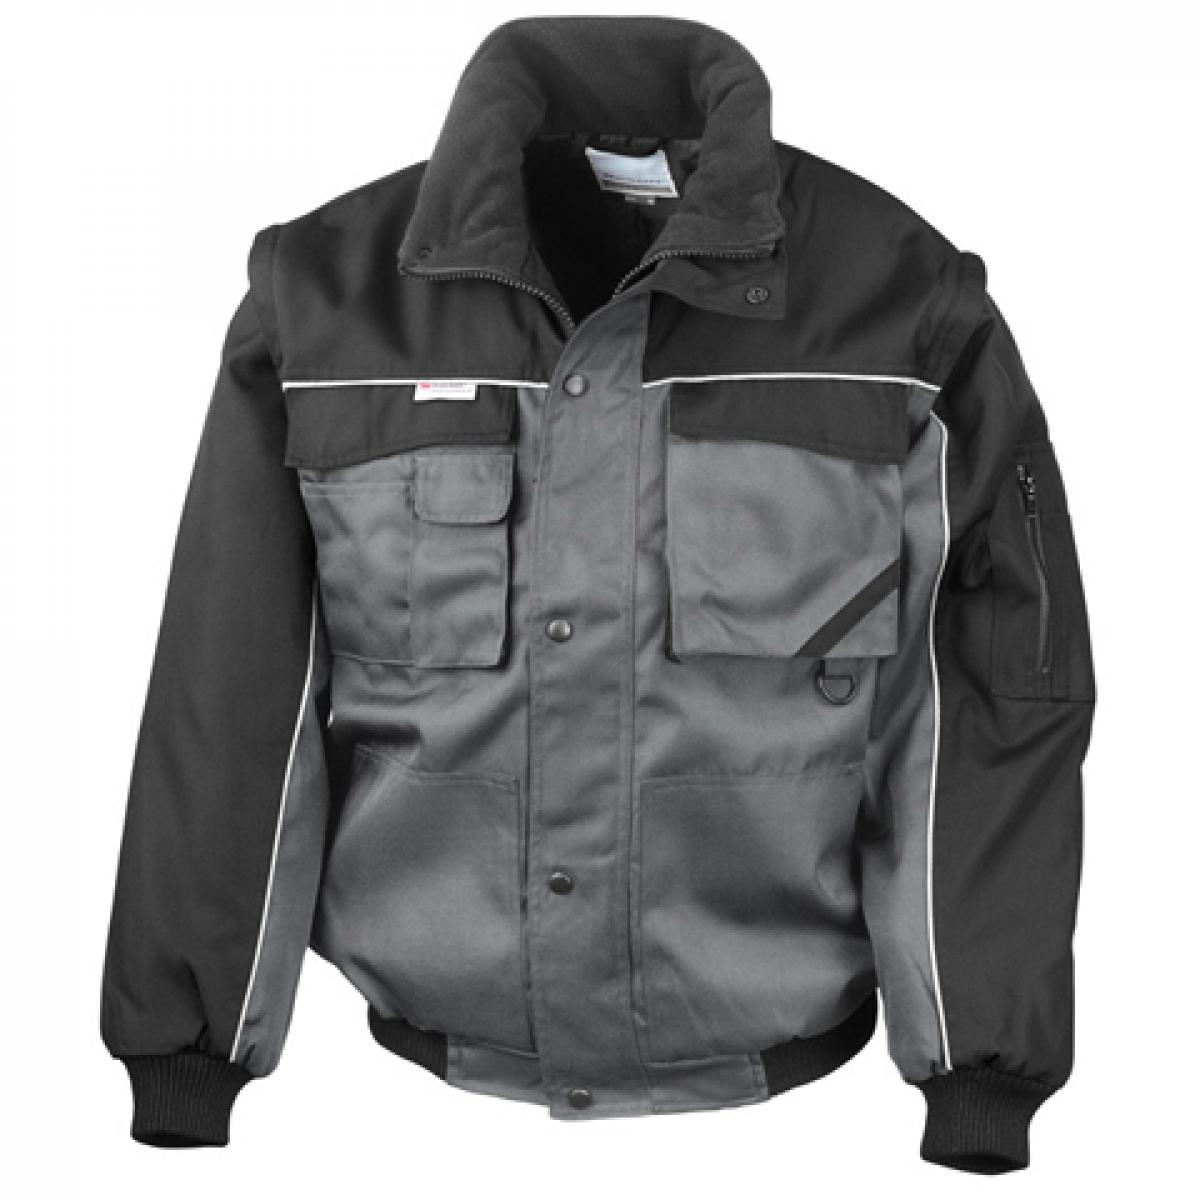 Hersteller: Result WORK-GUARD Herstellernummer: R71X Artikelbezeichnung: Workguard Heavy Duty Jacket / Arbeitsjacke Farbe: Grey/Black